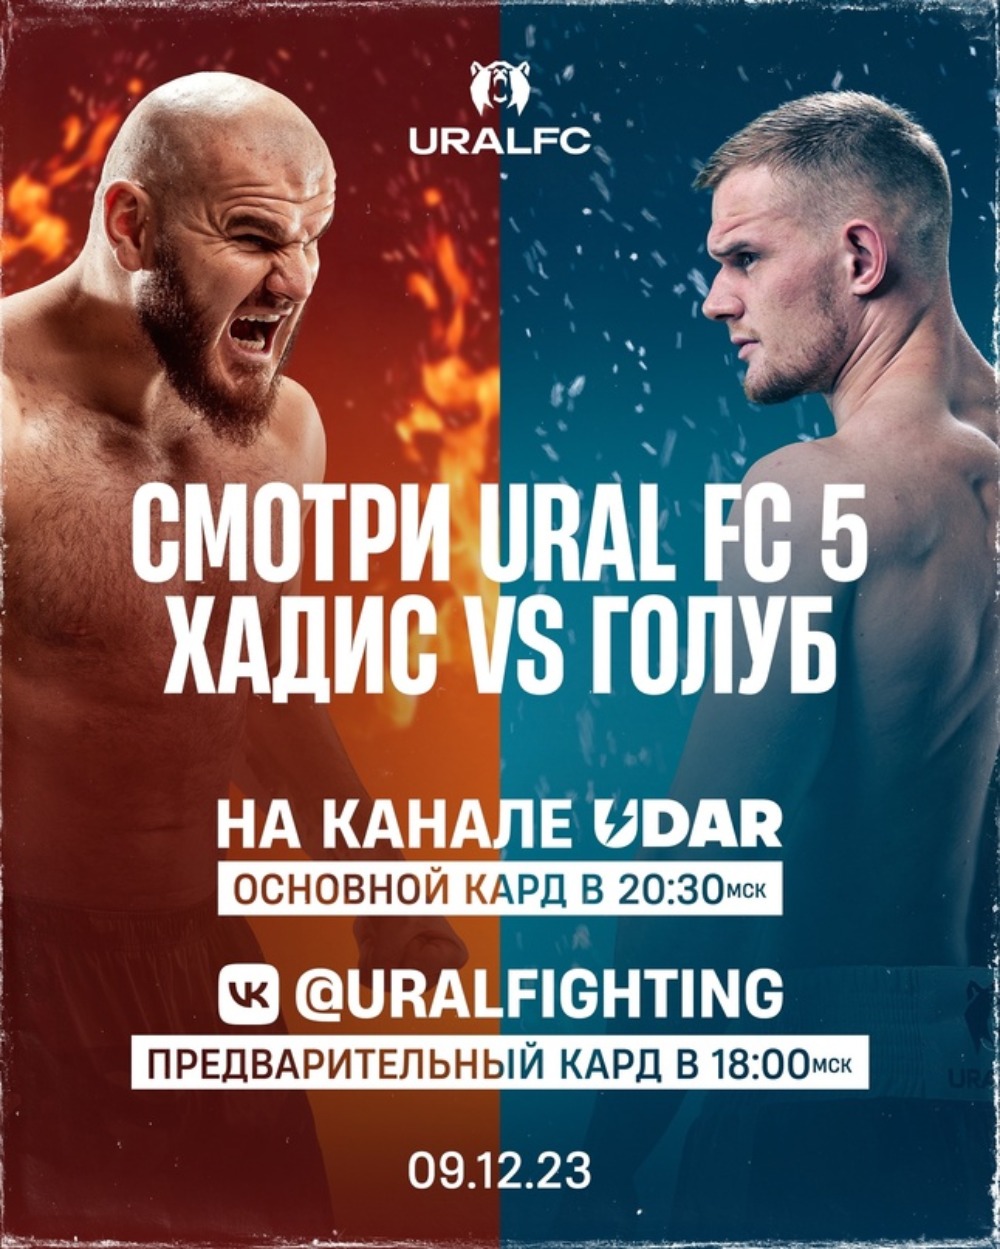 Где смотреть Ural FC: Ибрагимов – Голуб